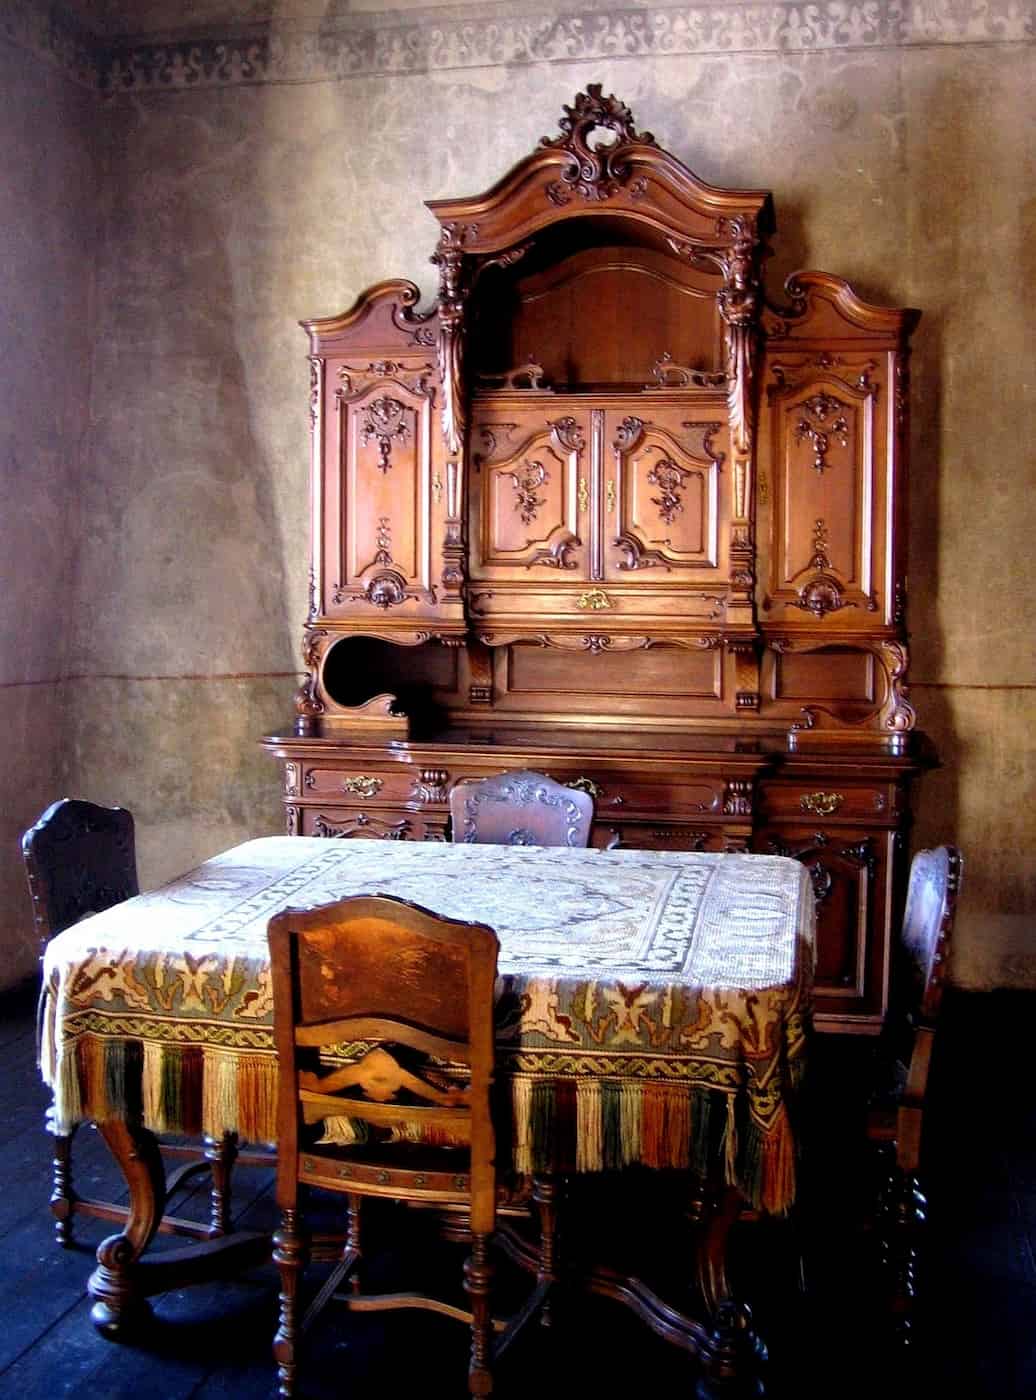 Life Storage Antique Furniture Values 5 